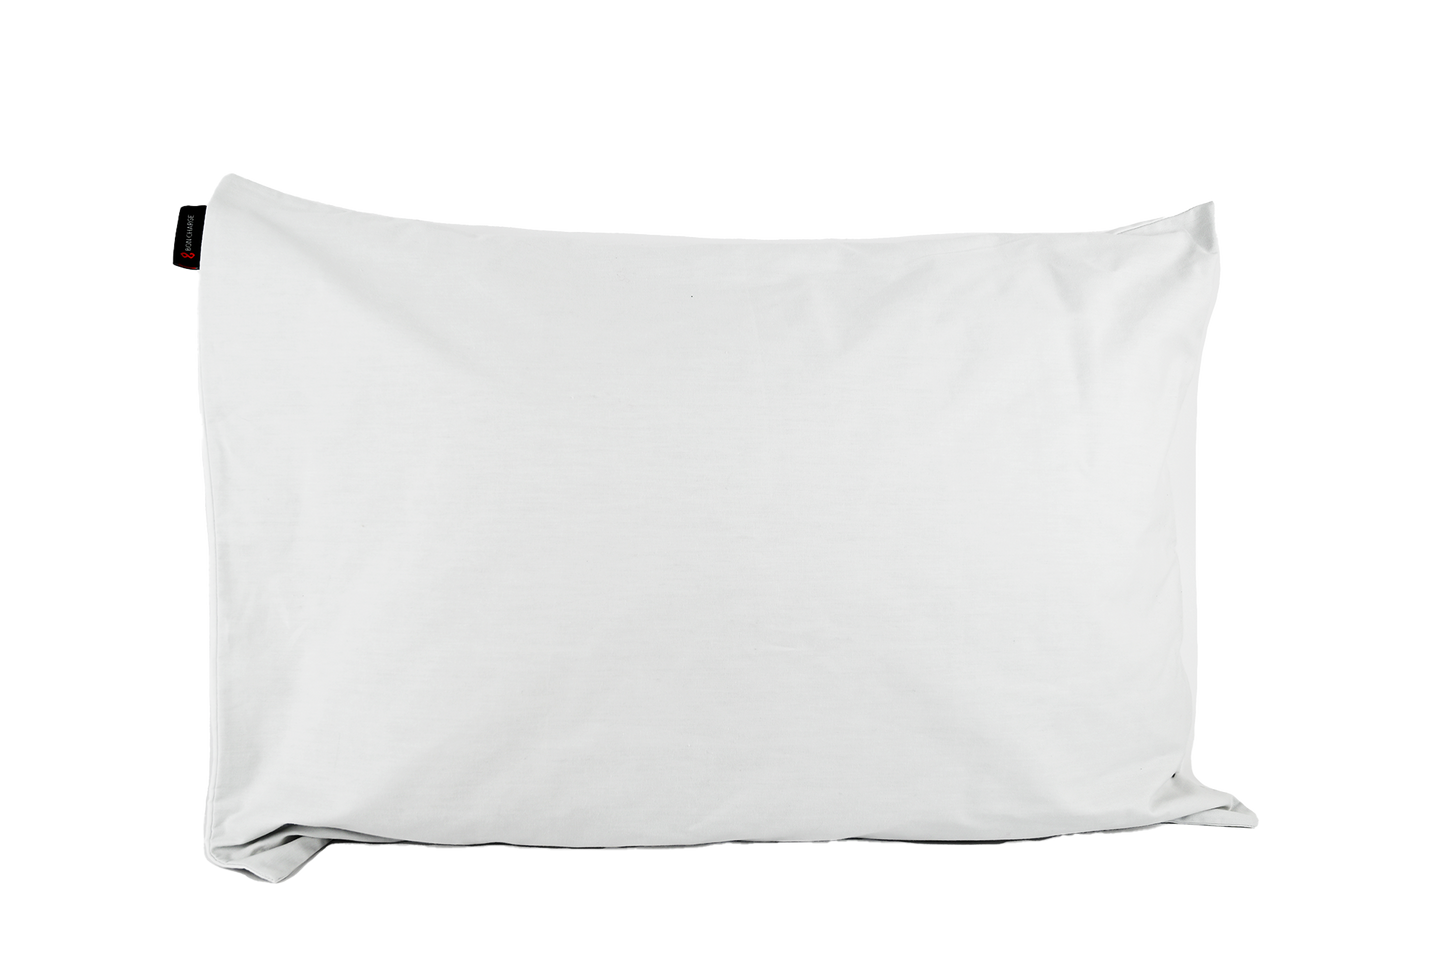 EMF Radiation Blocking Pillowcase